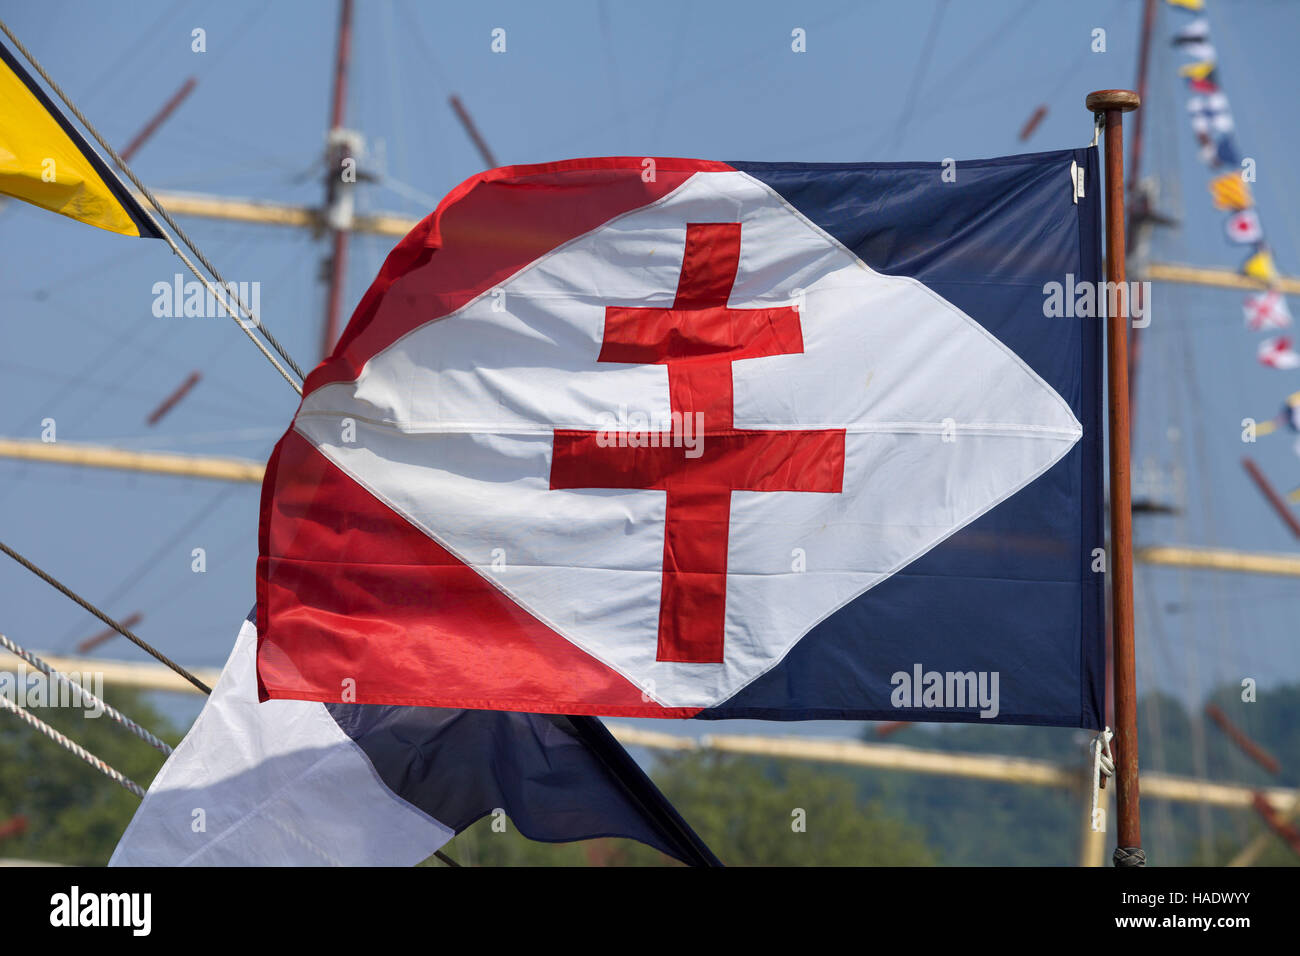 La marine française/, ou jack, montrant la Croix de Lorraine (Croix de Lorraine) - croix patriotique symbolisant la France Libre Banque D'Images